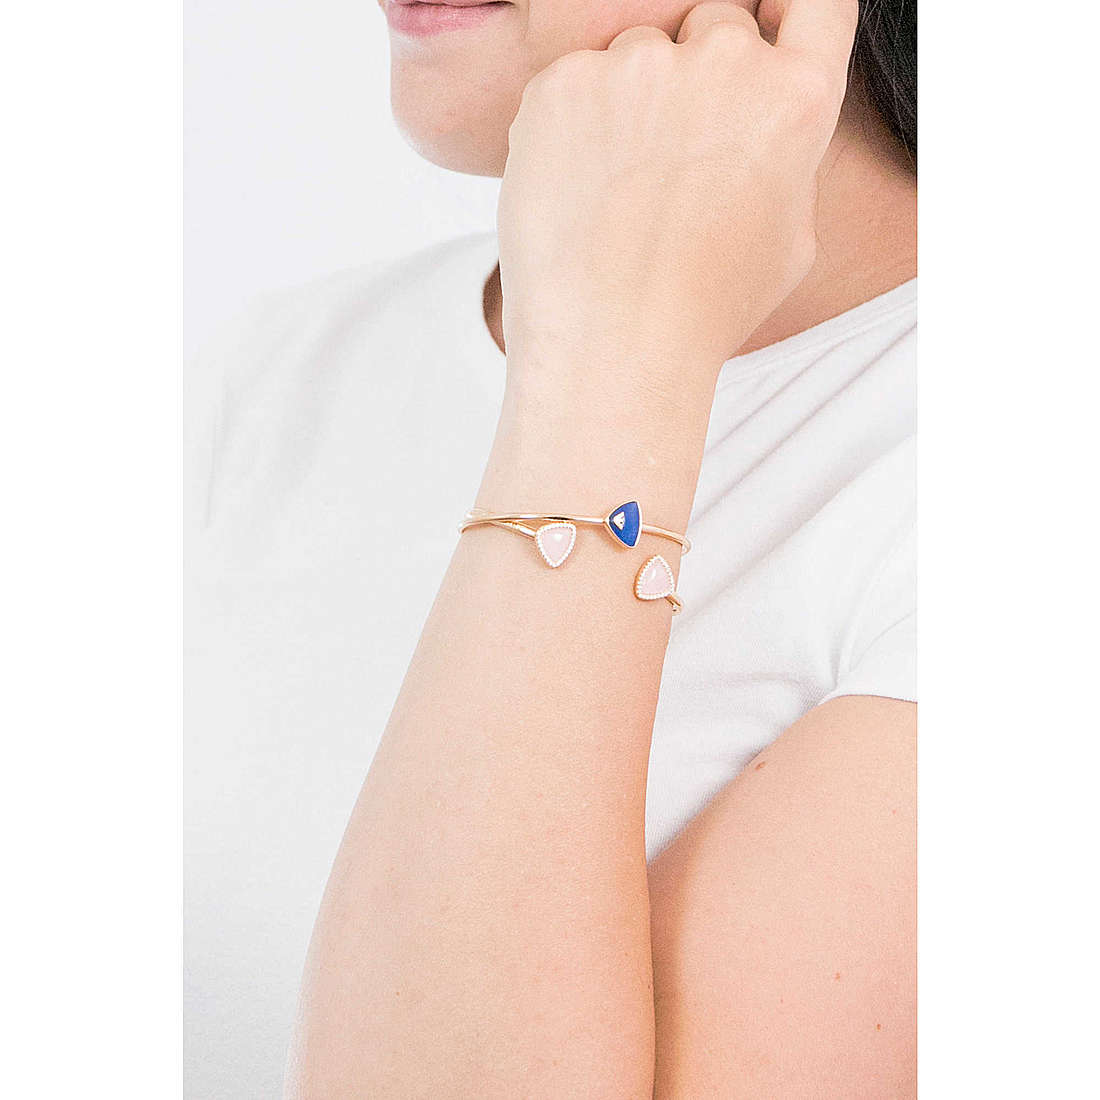 Emporio Armani bracelets woman EG3447221 wearing